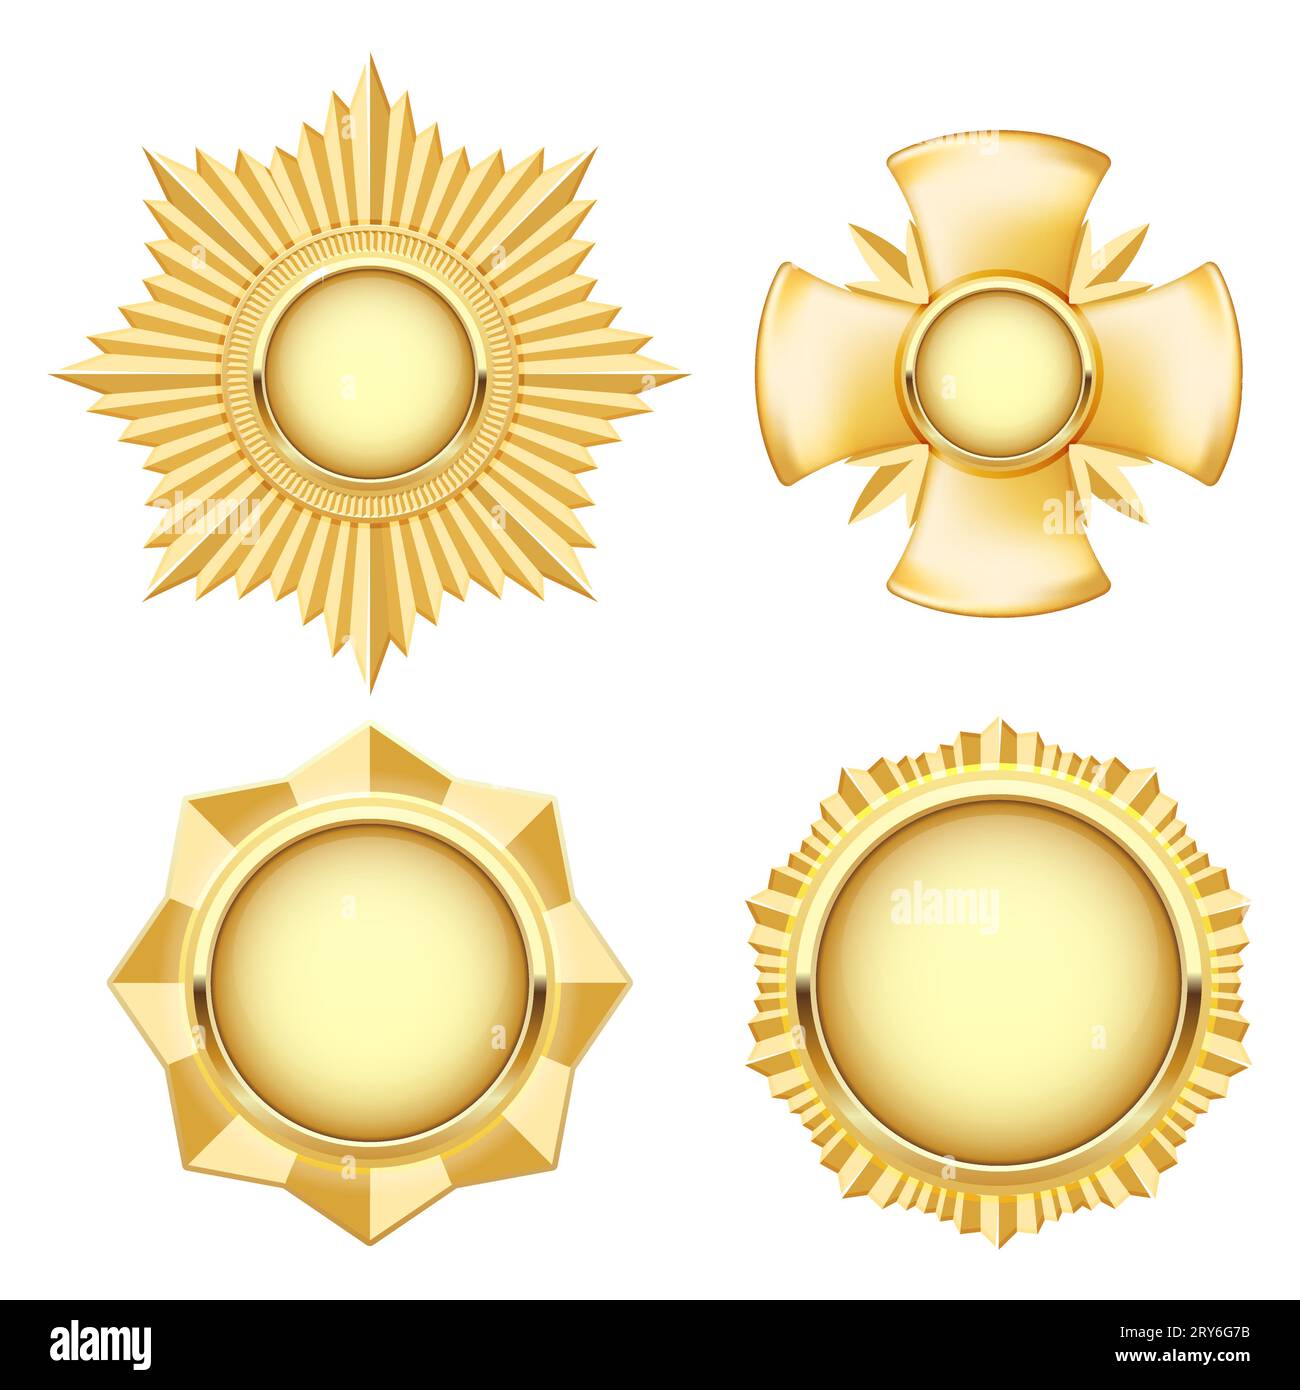 Medaglia d'oro e insegne, stella e croce dentate, medaglione premio, distintivo militare, vettore Illustrazione Vettoriale